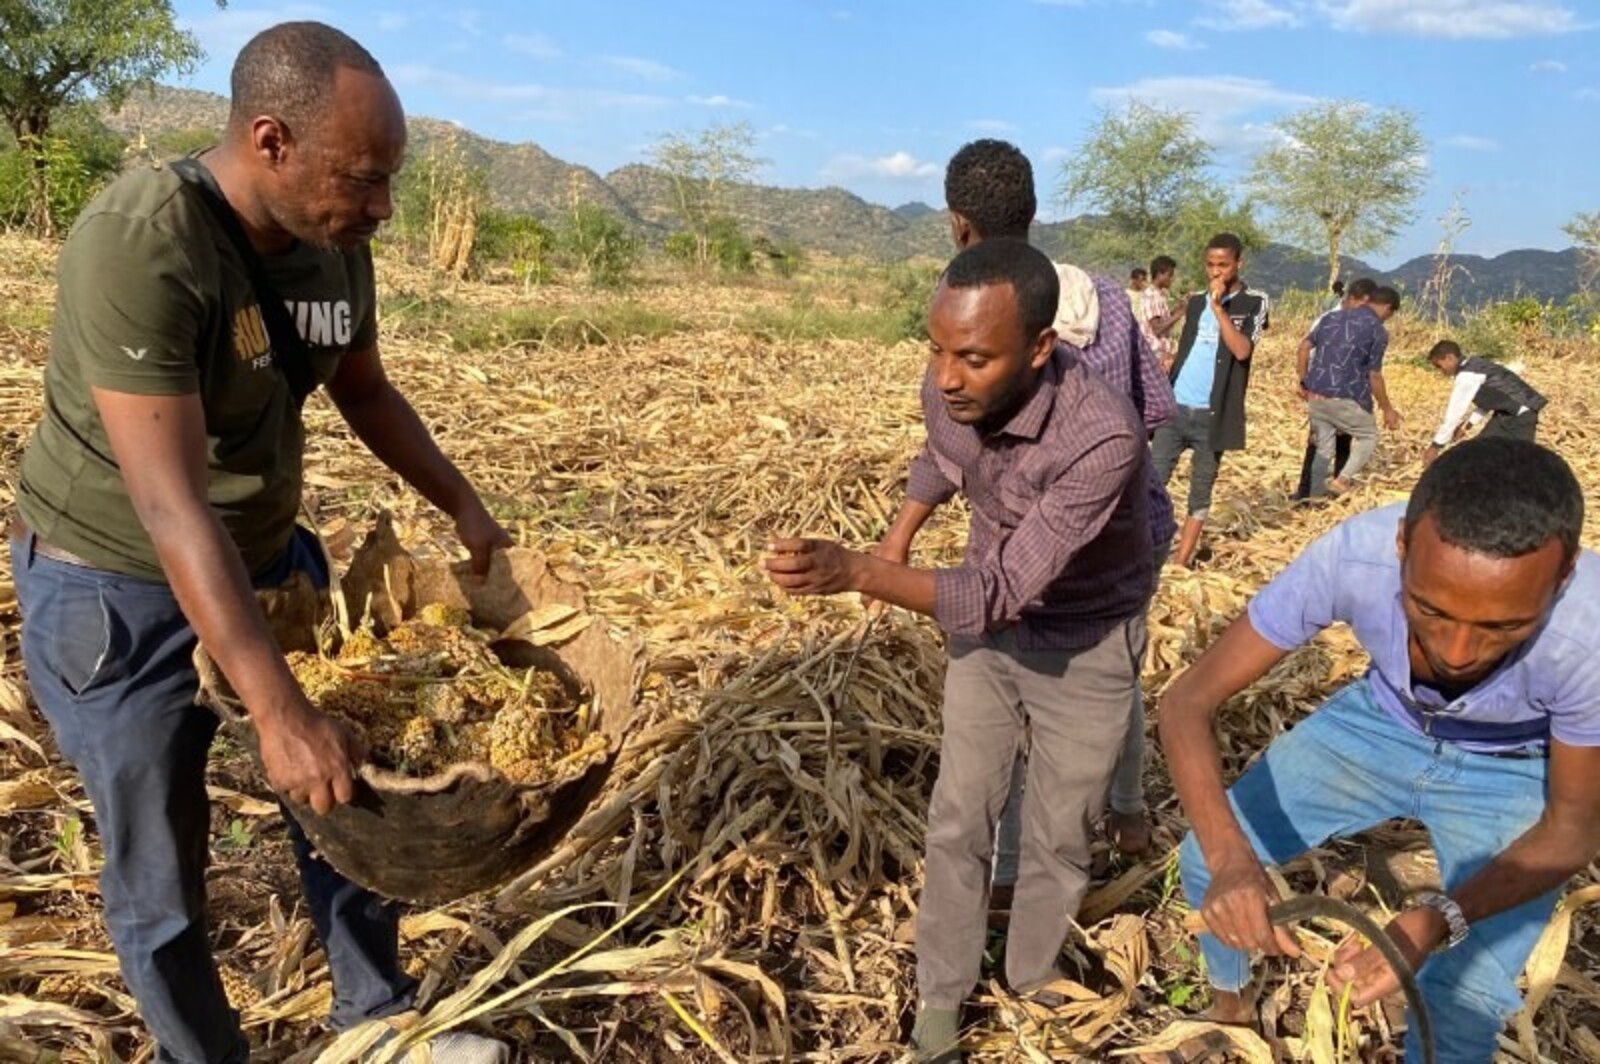 Hilfsprojekt für Landwirte in Äthiopien, wo eine Heuschreckenplage herrscht